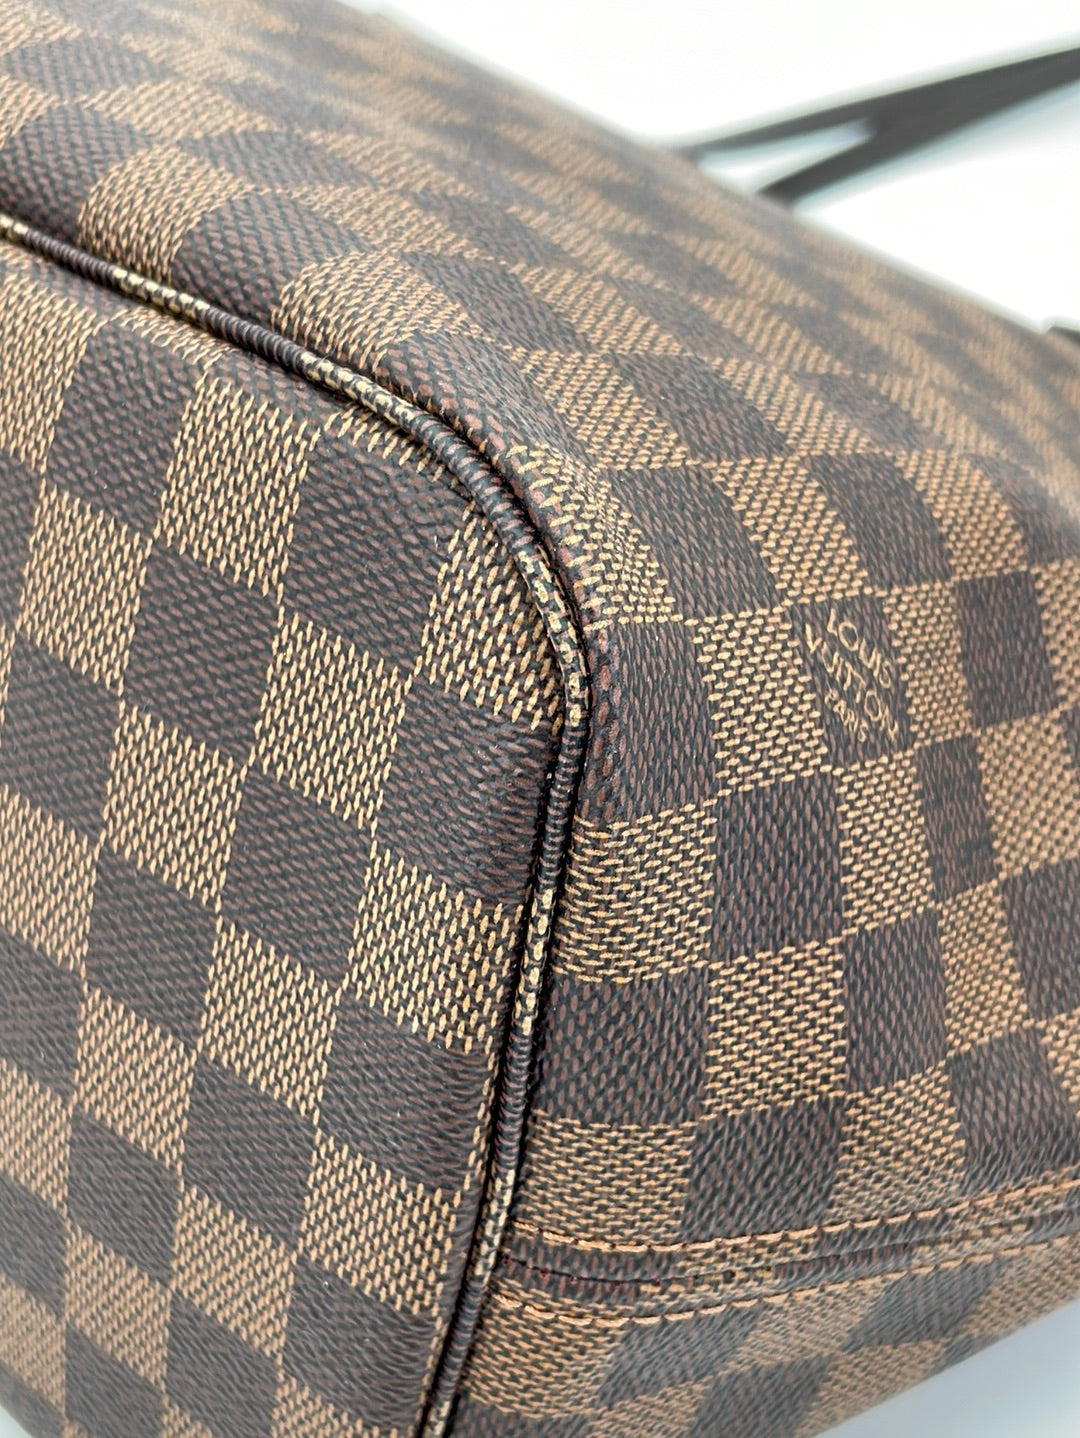 Authenticated used Louis Vuitton Damier Neverfull PM N41359 Tote Bag 0074 Louis Vuitton, Adult Unisex, Size: (HxWxD): 22cm x 28cm x 12.5cm / 8.66'' x